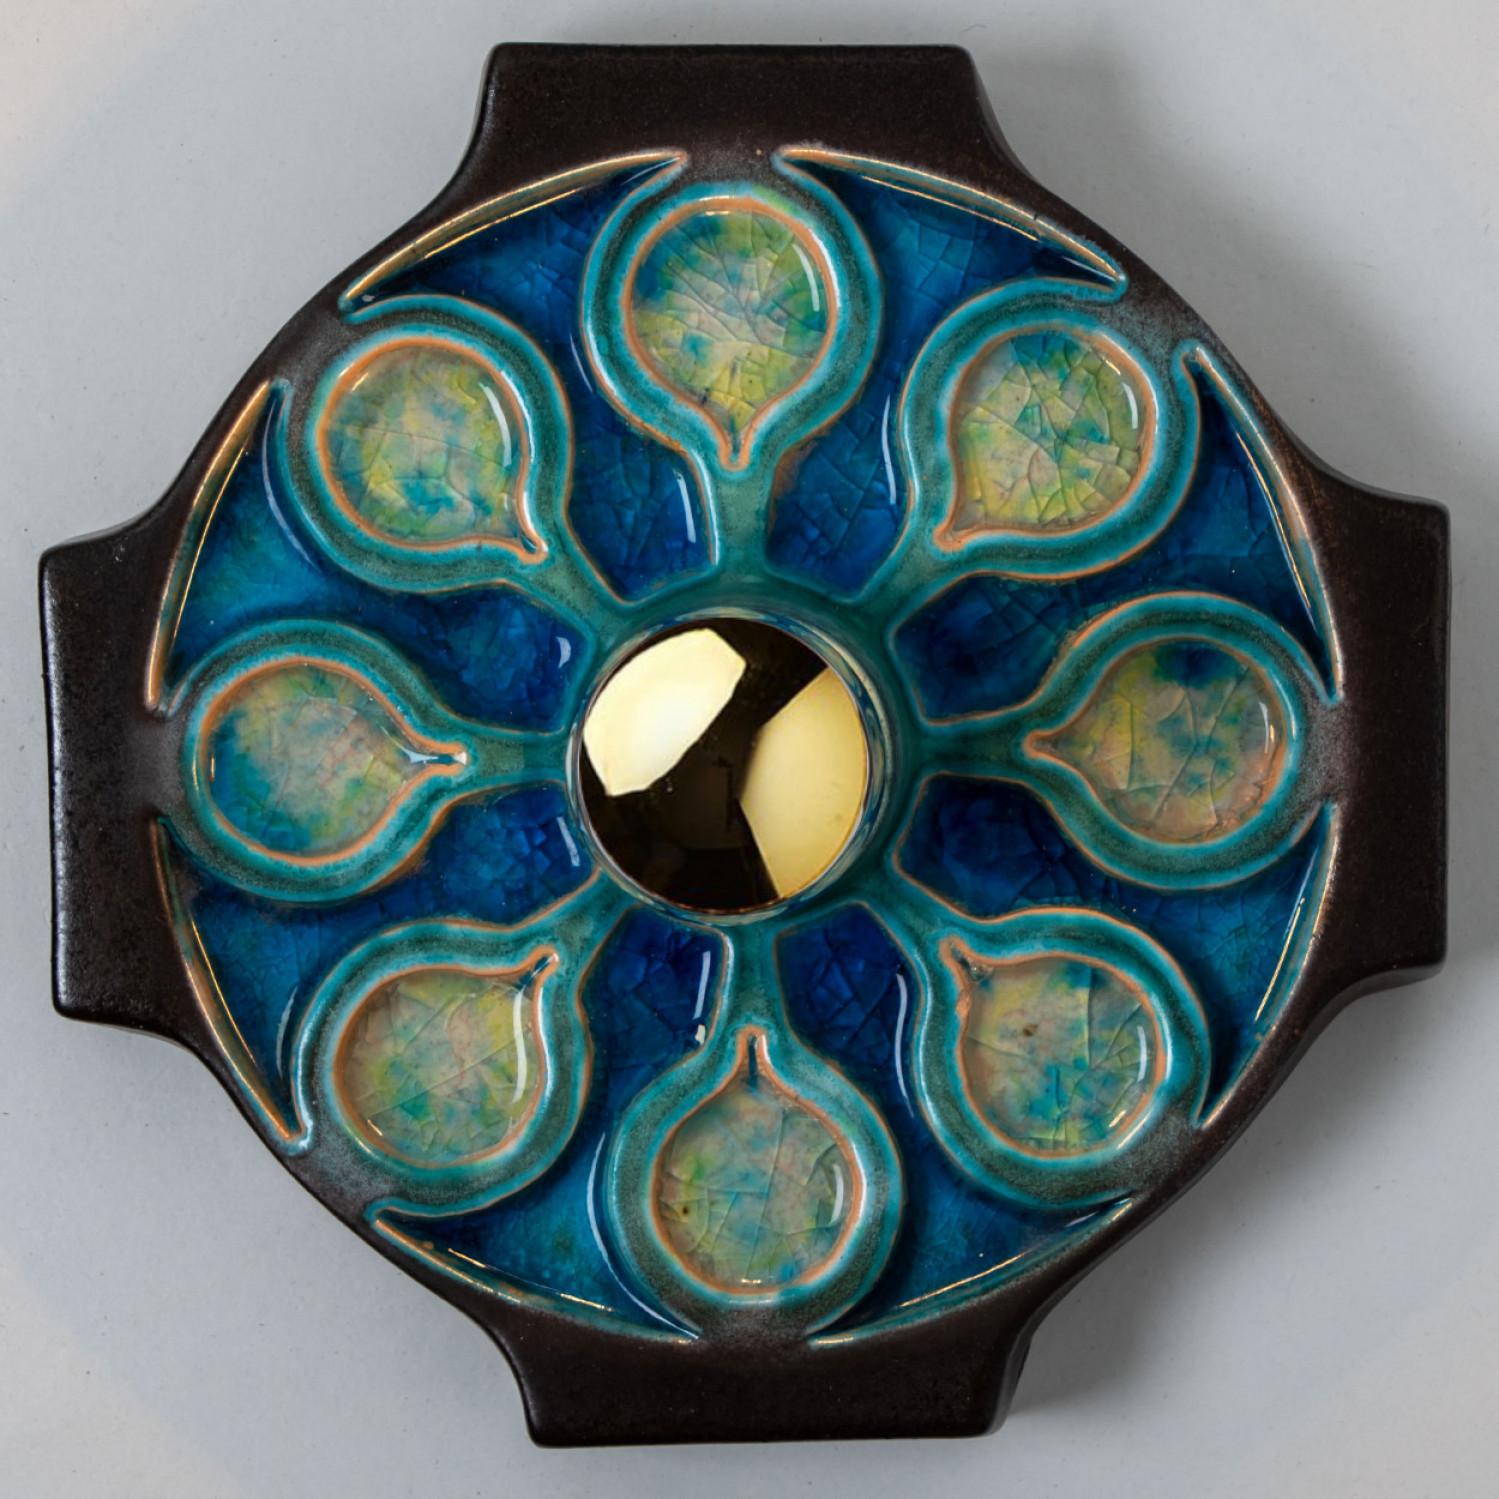 Keramik-Wandleuchte oder Wandleuchter aus der Mitte des Jahrhunderts, hergestellt in Deutschland um 1960.
Die Leuchte ist aus Keramik gefertigt und in blauen Farbtönen dekoriert und glasiert.

Unterschiedliche Effekte können durch den Einsatz